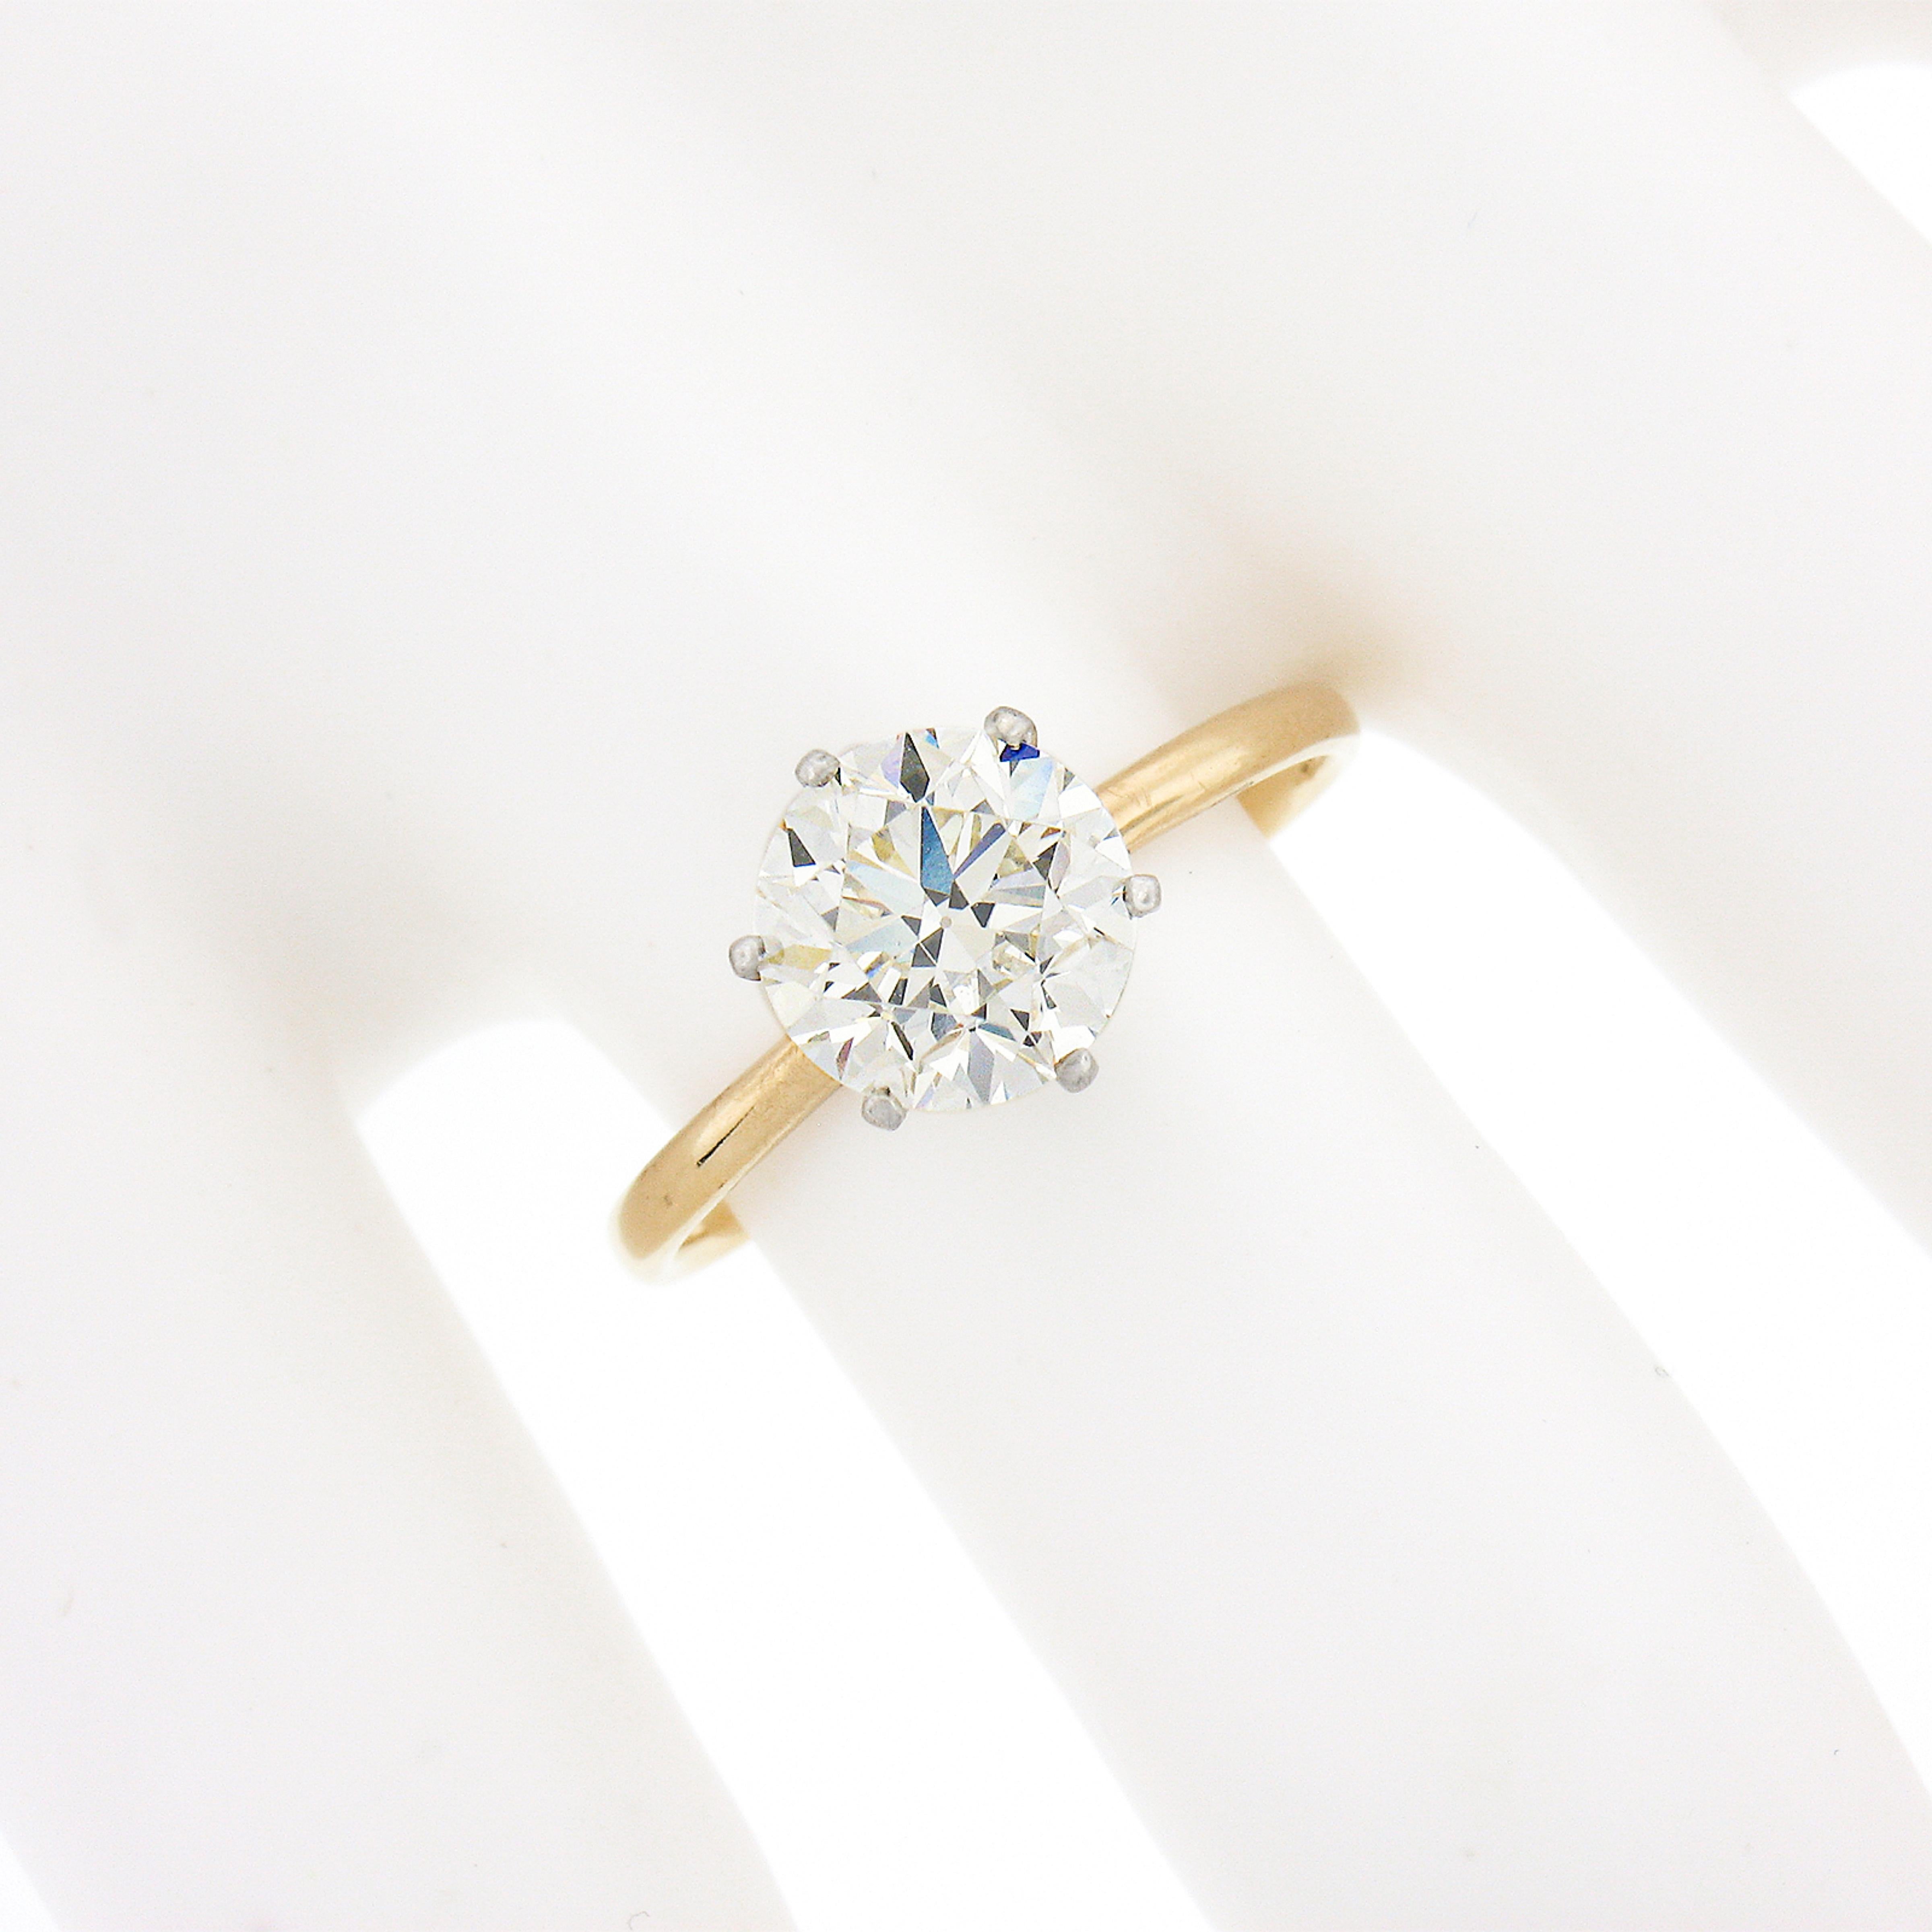 Antique Edwardian Tiffany & Co. 18k Gold Plat GIA Round Diamond Engagement Ring 2